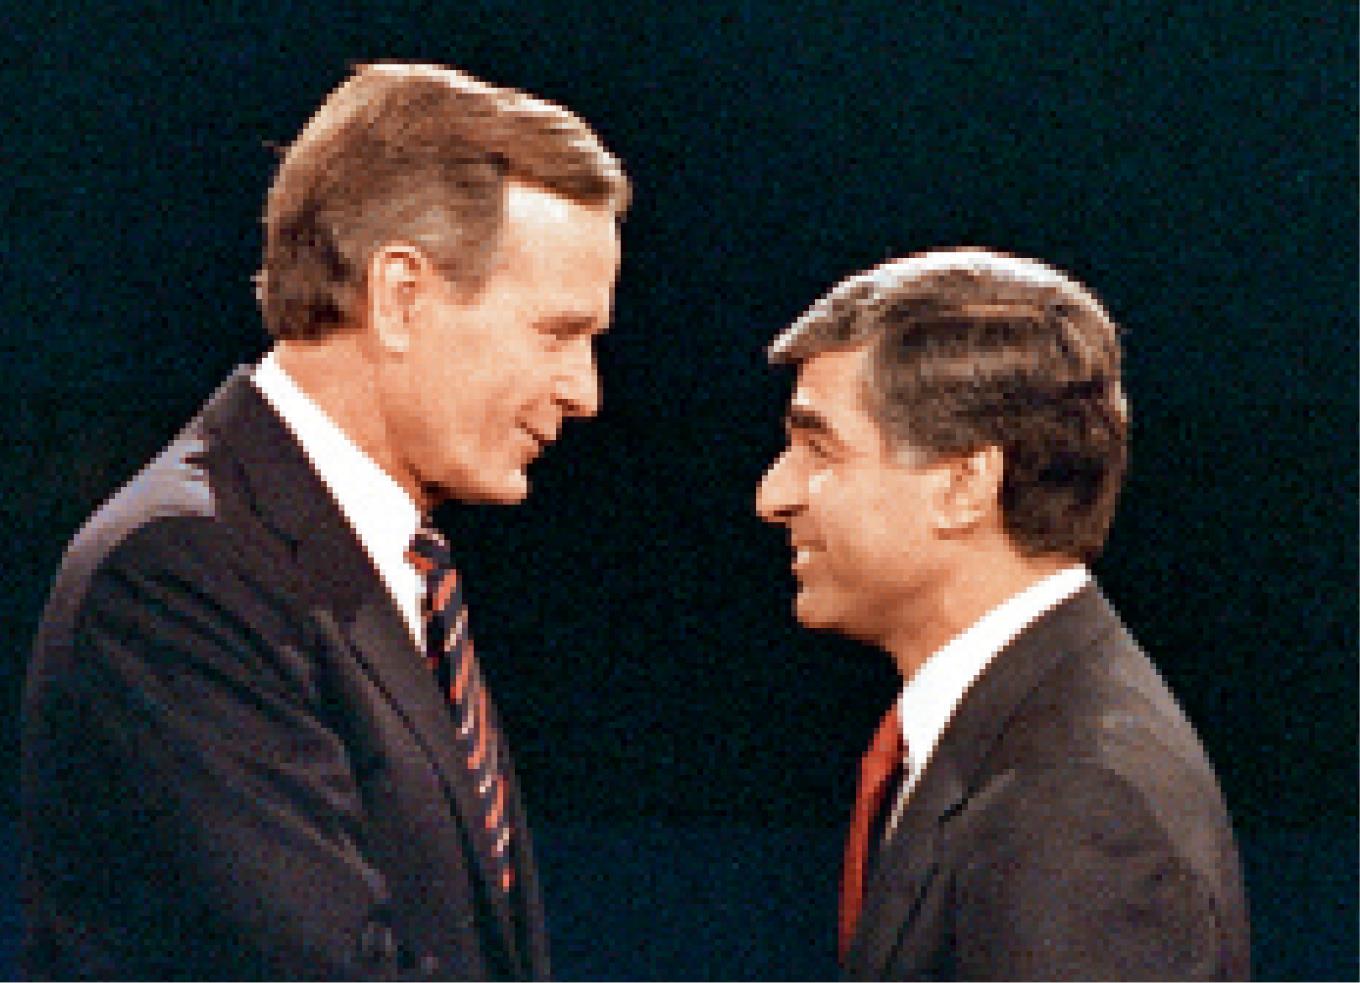 George H. W. Bush po wyrównanej dyskusji wygrał debatę w 1988 r. jednym prostym gestem. Kiedy na środku studia uścisnął Michaelowi Dukakisowi dłoń, wszyscy zobaczyli, jak bardzo góruje nad przeciwnikiem.